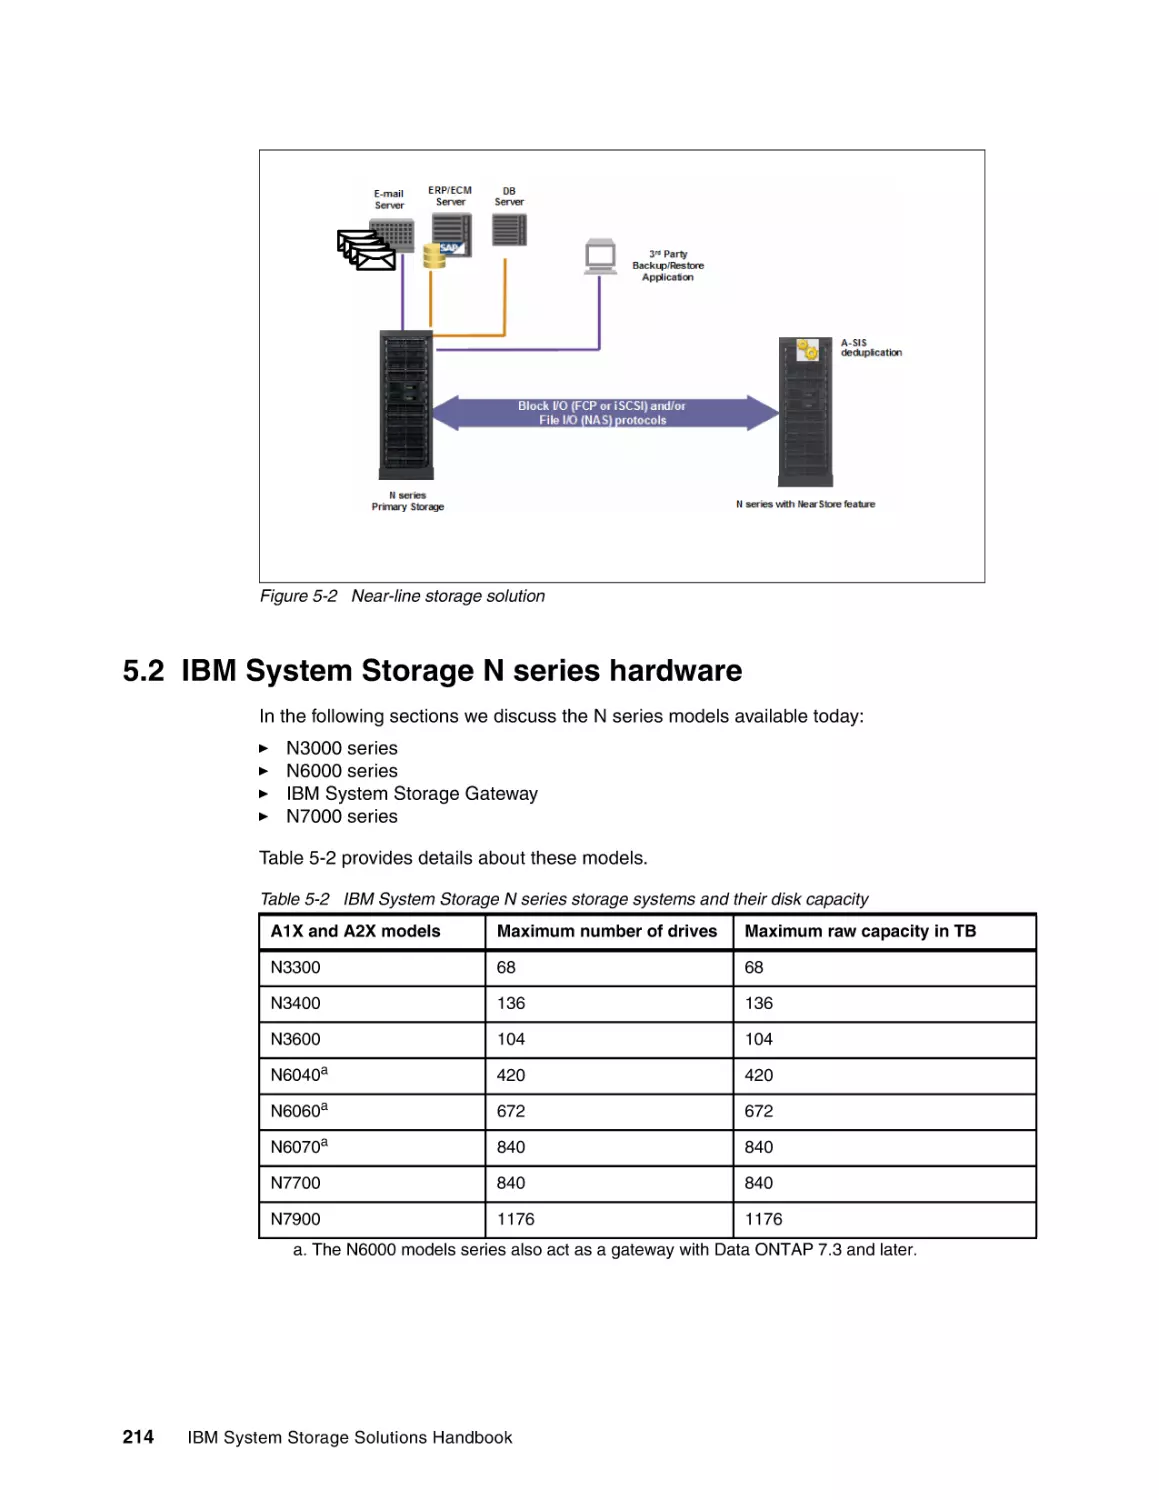 5.2 IBM System Storage N series hardware